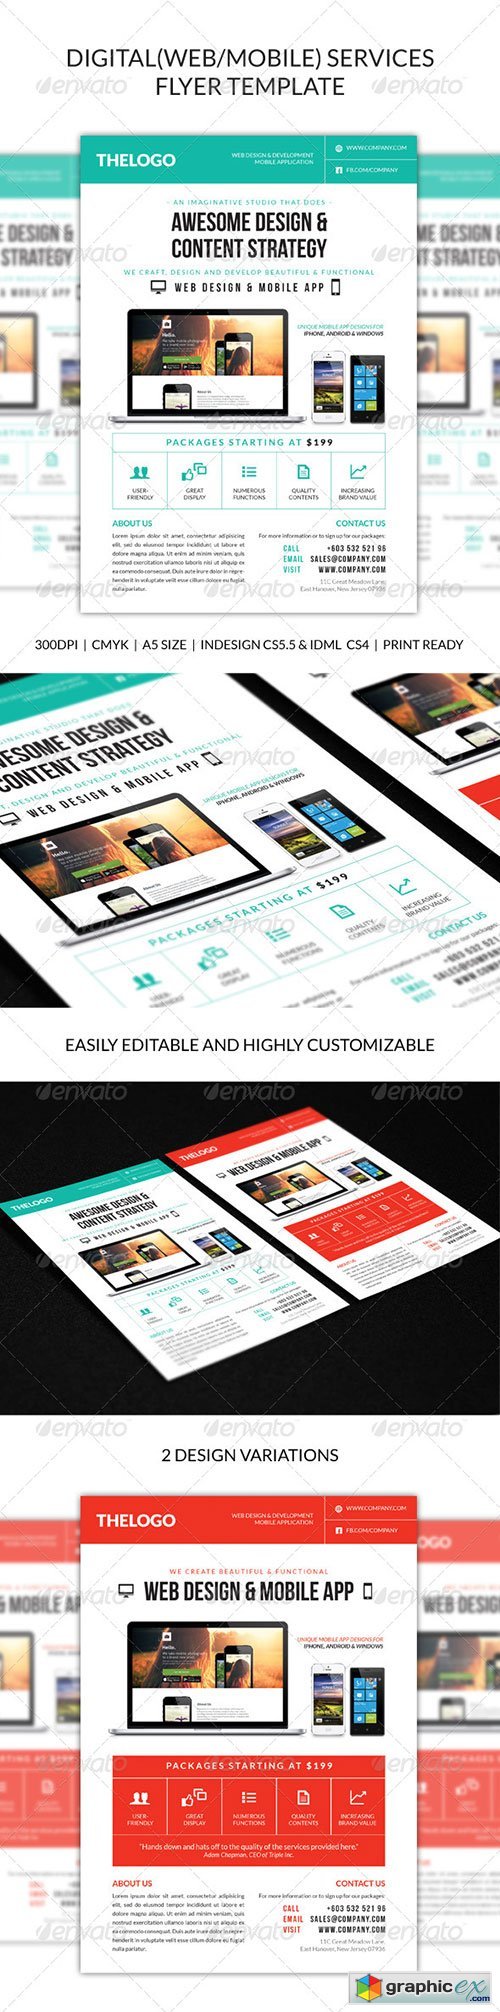 Digital (Web/Mobile) Design Services Flyer